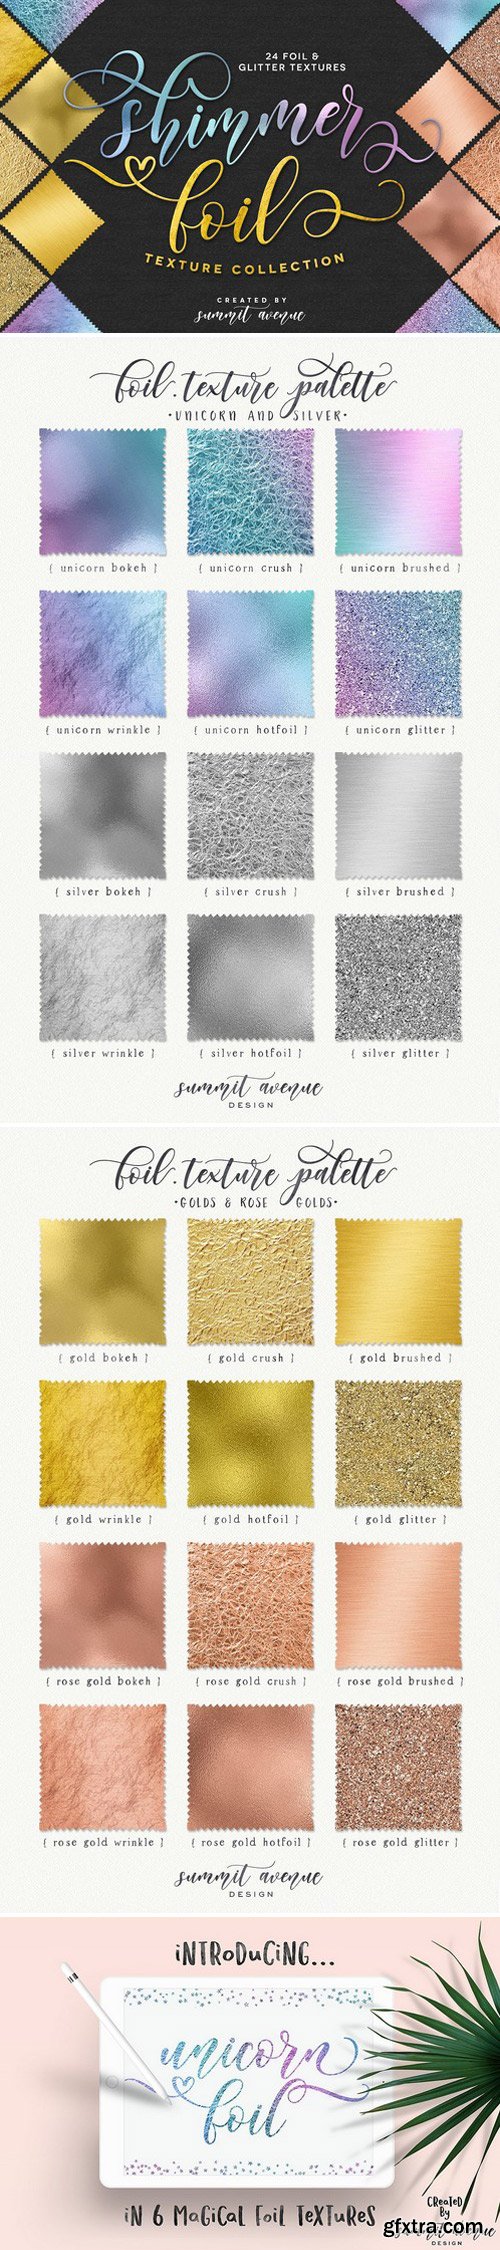 CM - Shimmer Gold-Rose Gold Foil Textures 1609408